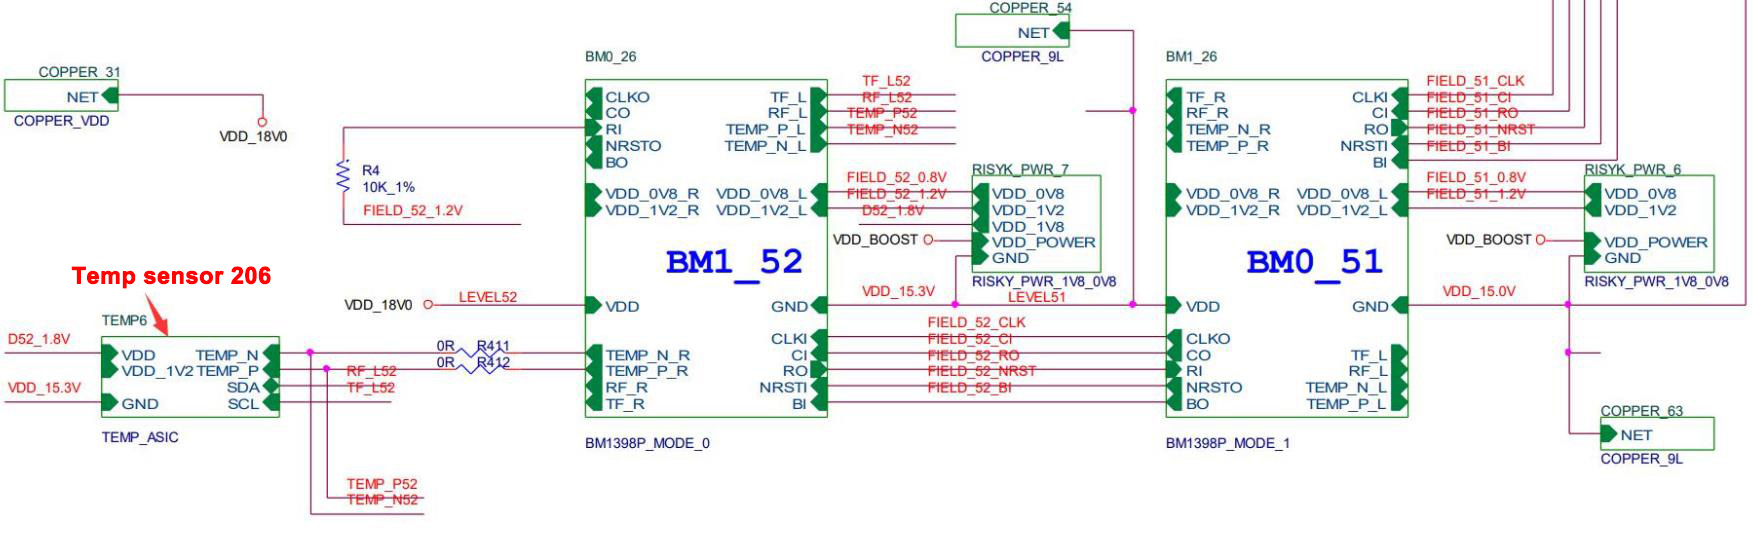 BM1398 circuit diagram